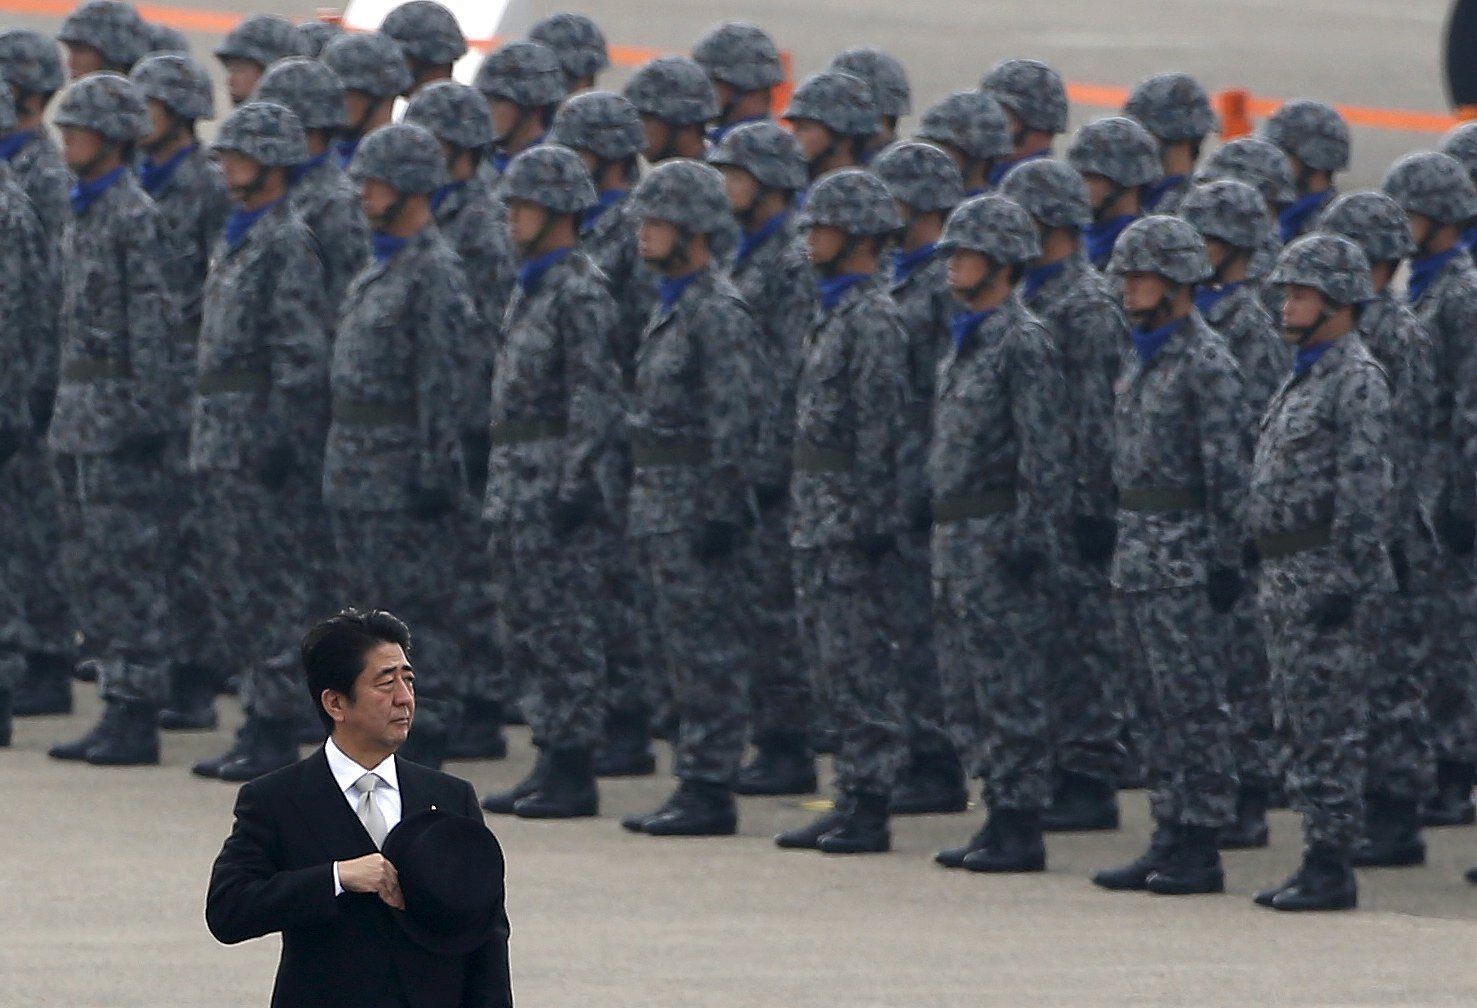 Šinzó Abe na vojenské základně Hjakuri.